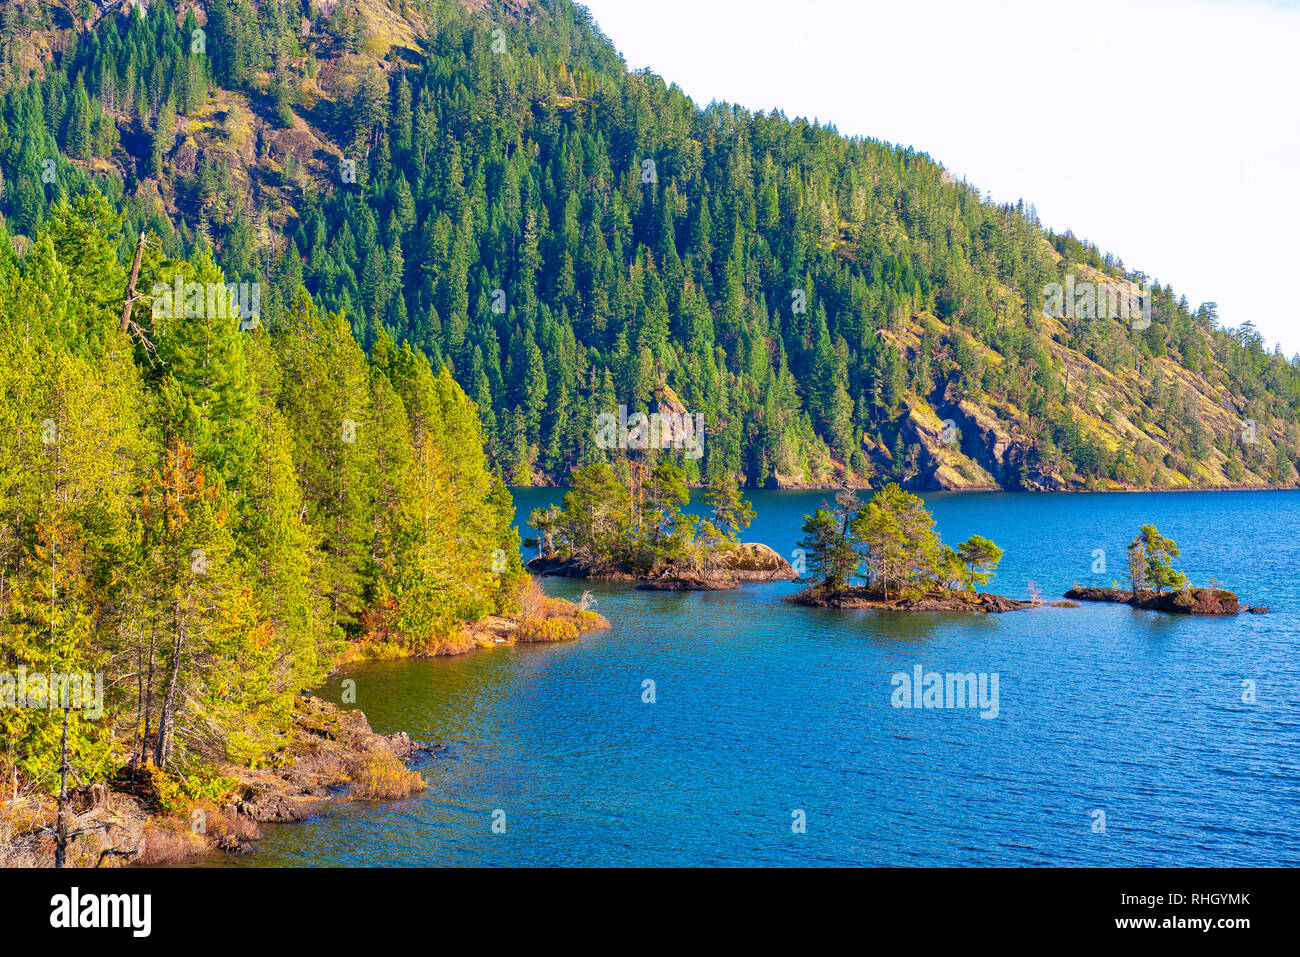 Anzeigen von Gordon Bay Park am Cowichan Lake in Vancouver Island während der Herbstsaison, in BC, Kanada Stockfoto